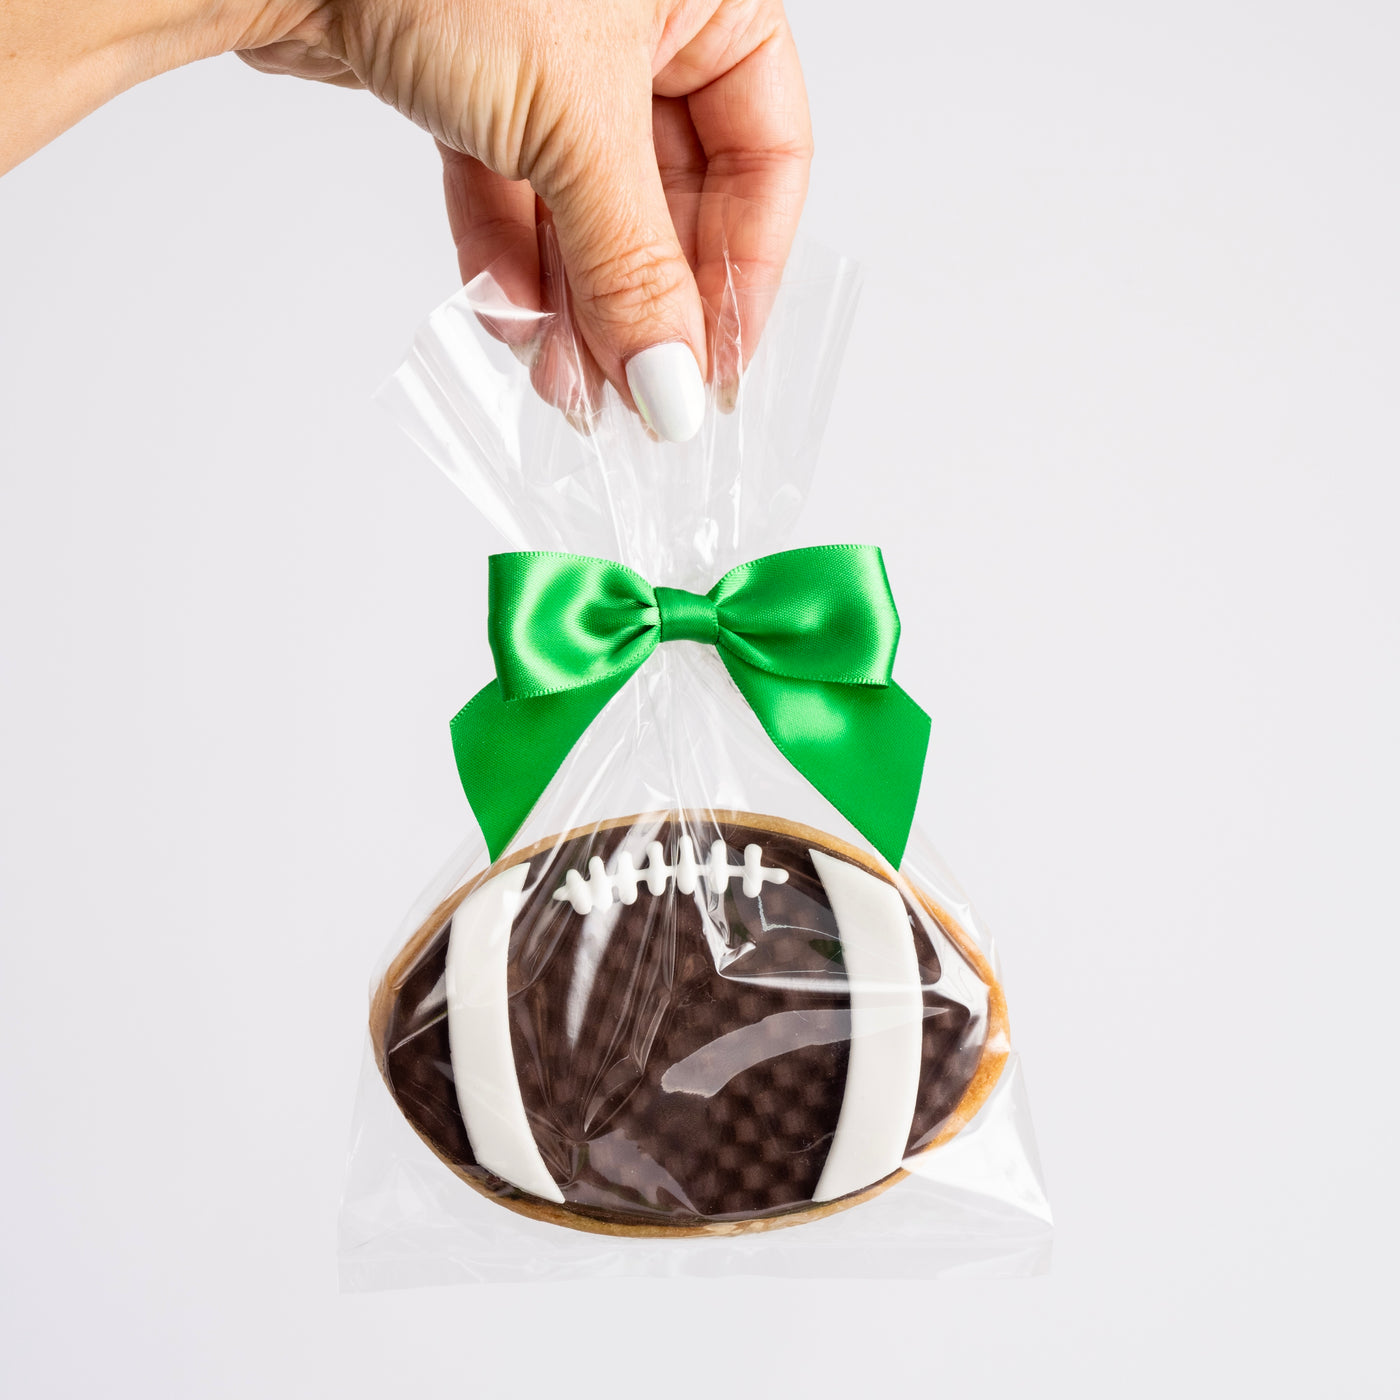 Football Cookies - Sweet E's Bake Shop - Sweet E's Bake Shop